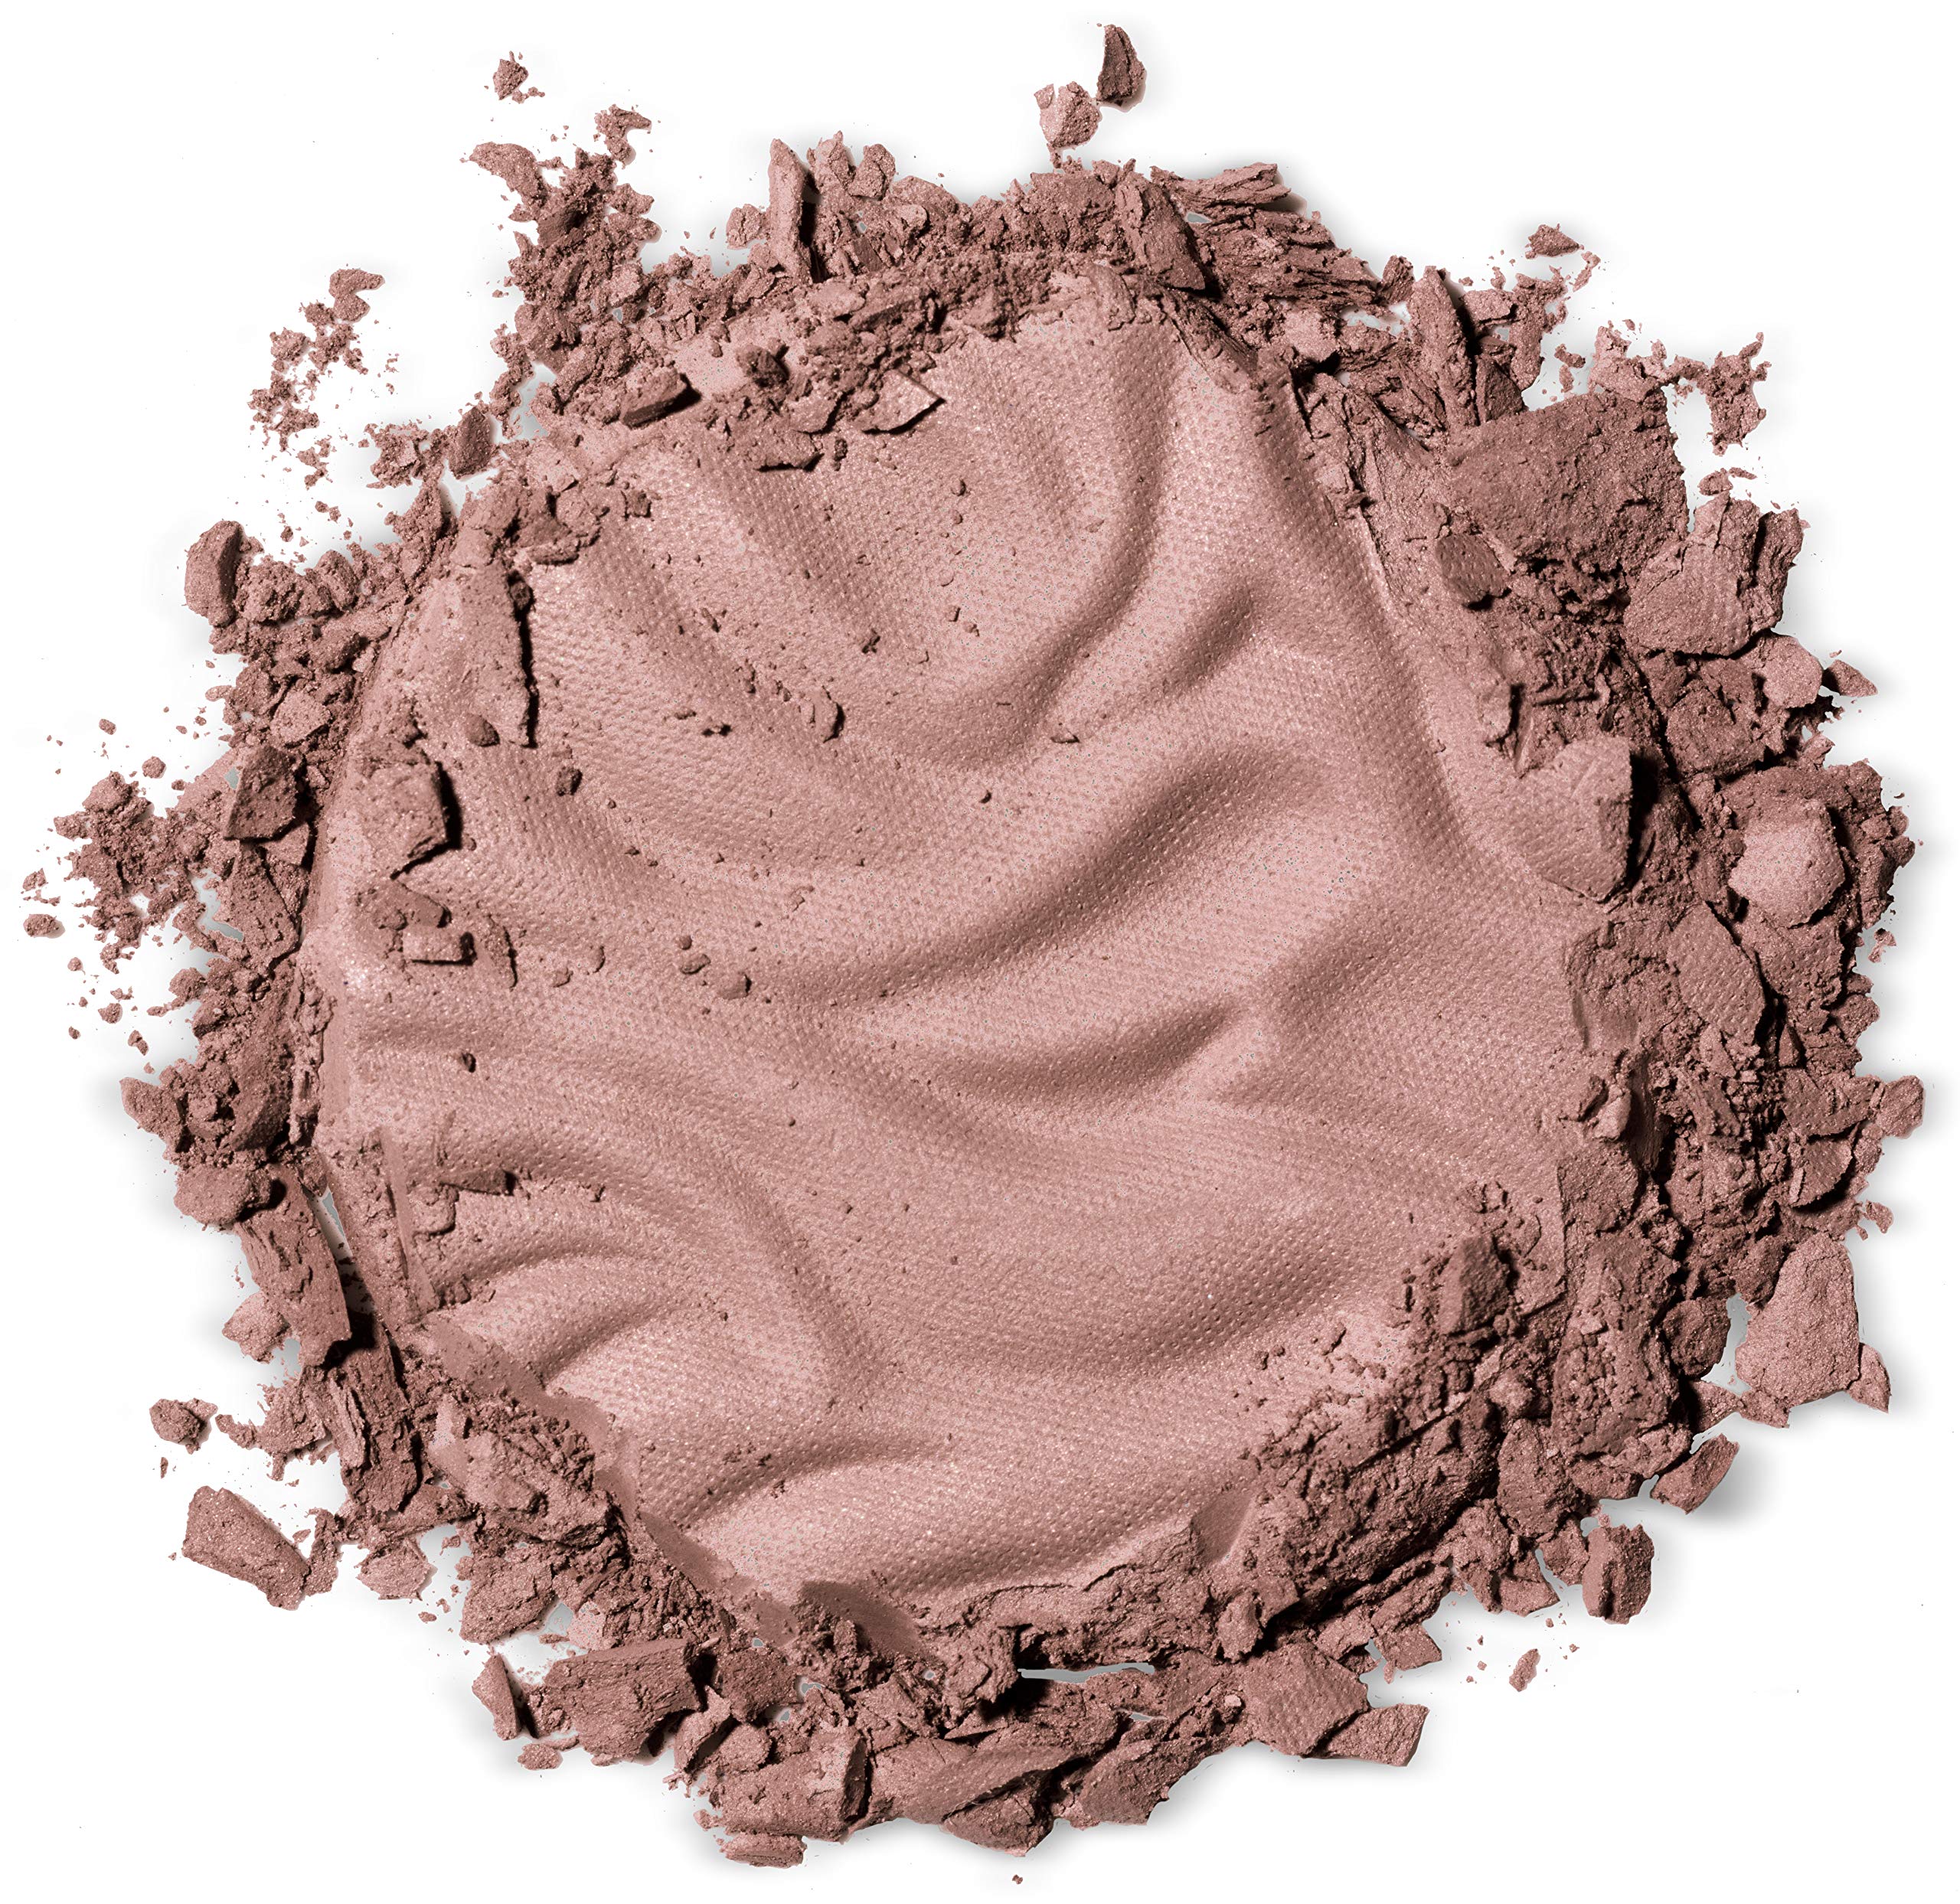 Physicians Formula Murumuru Butter Face Blush Makeup Powder, Plum Rose, 0.26 Ounce